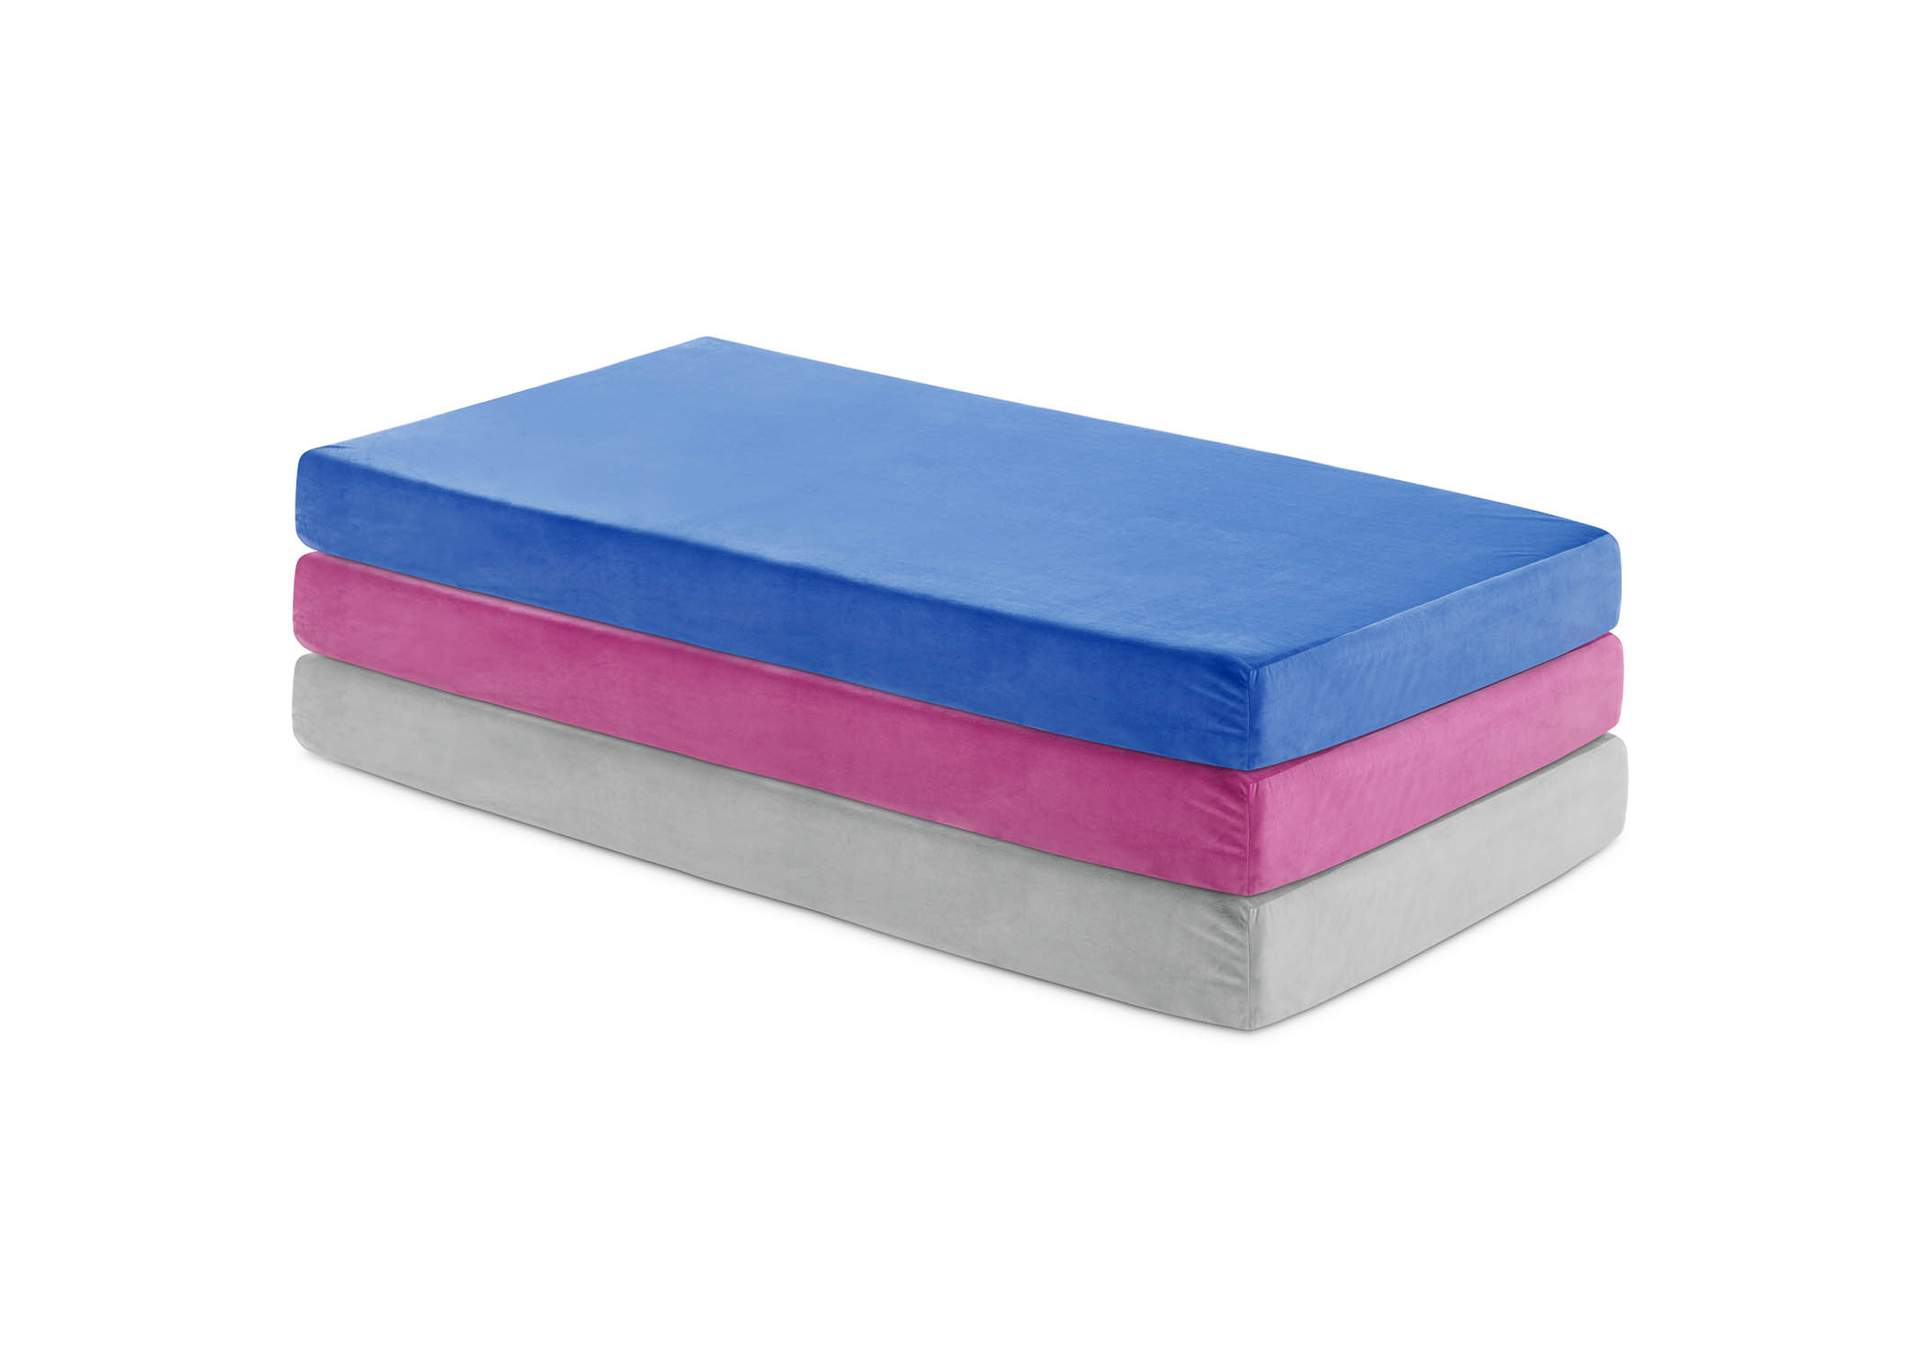 Weekender Blue Brighton Bed Gel Memory Foam Twin XL Mattress,Malouf